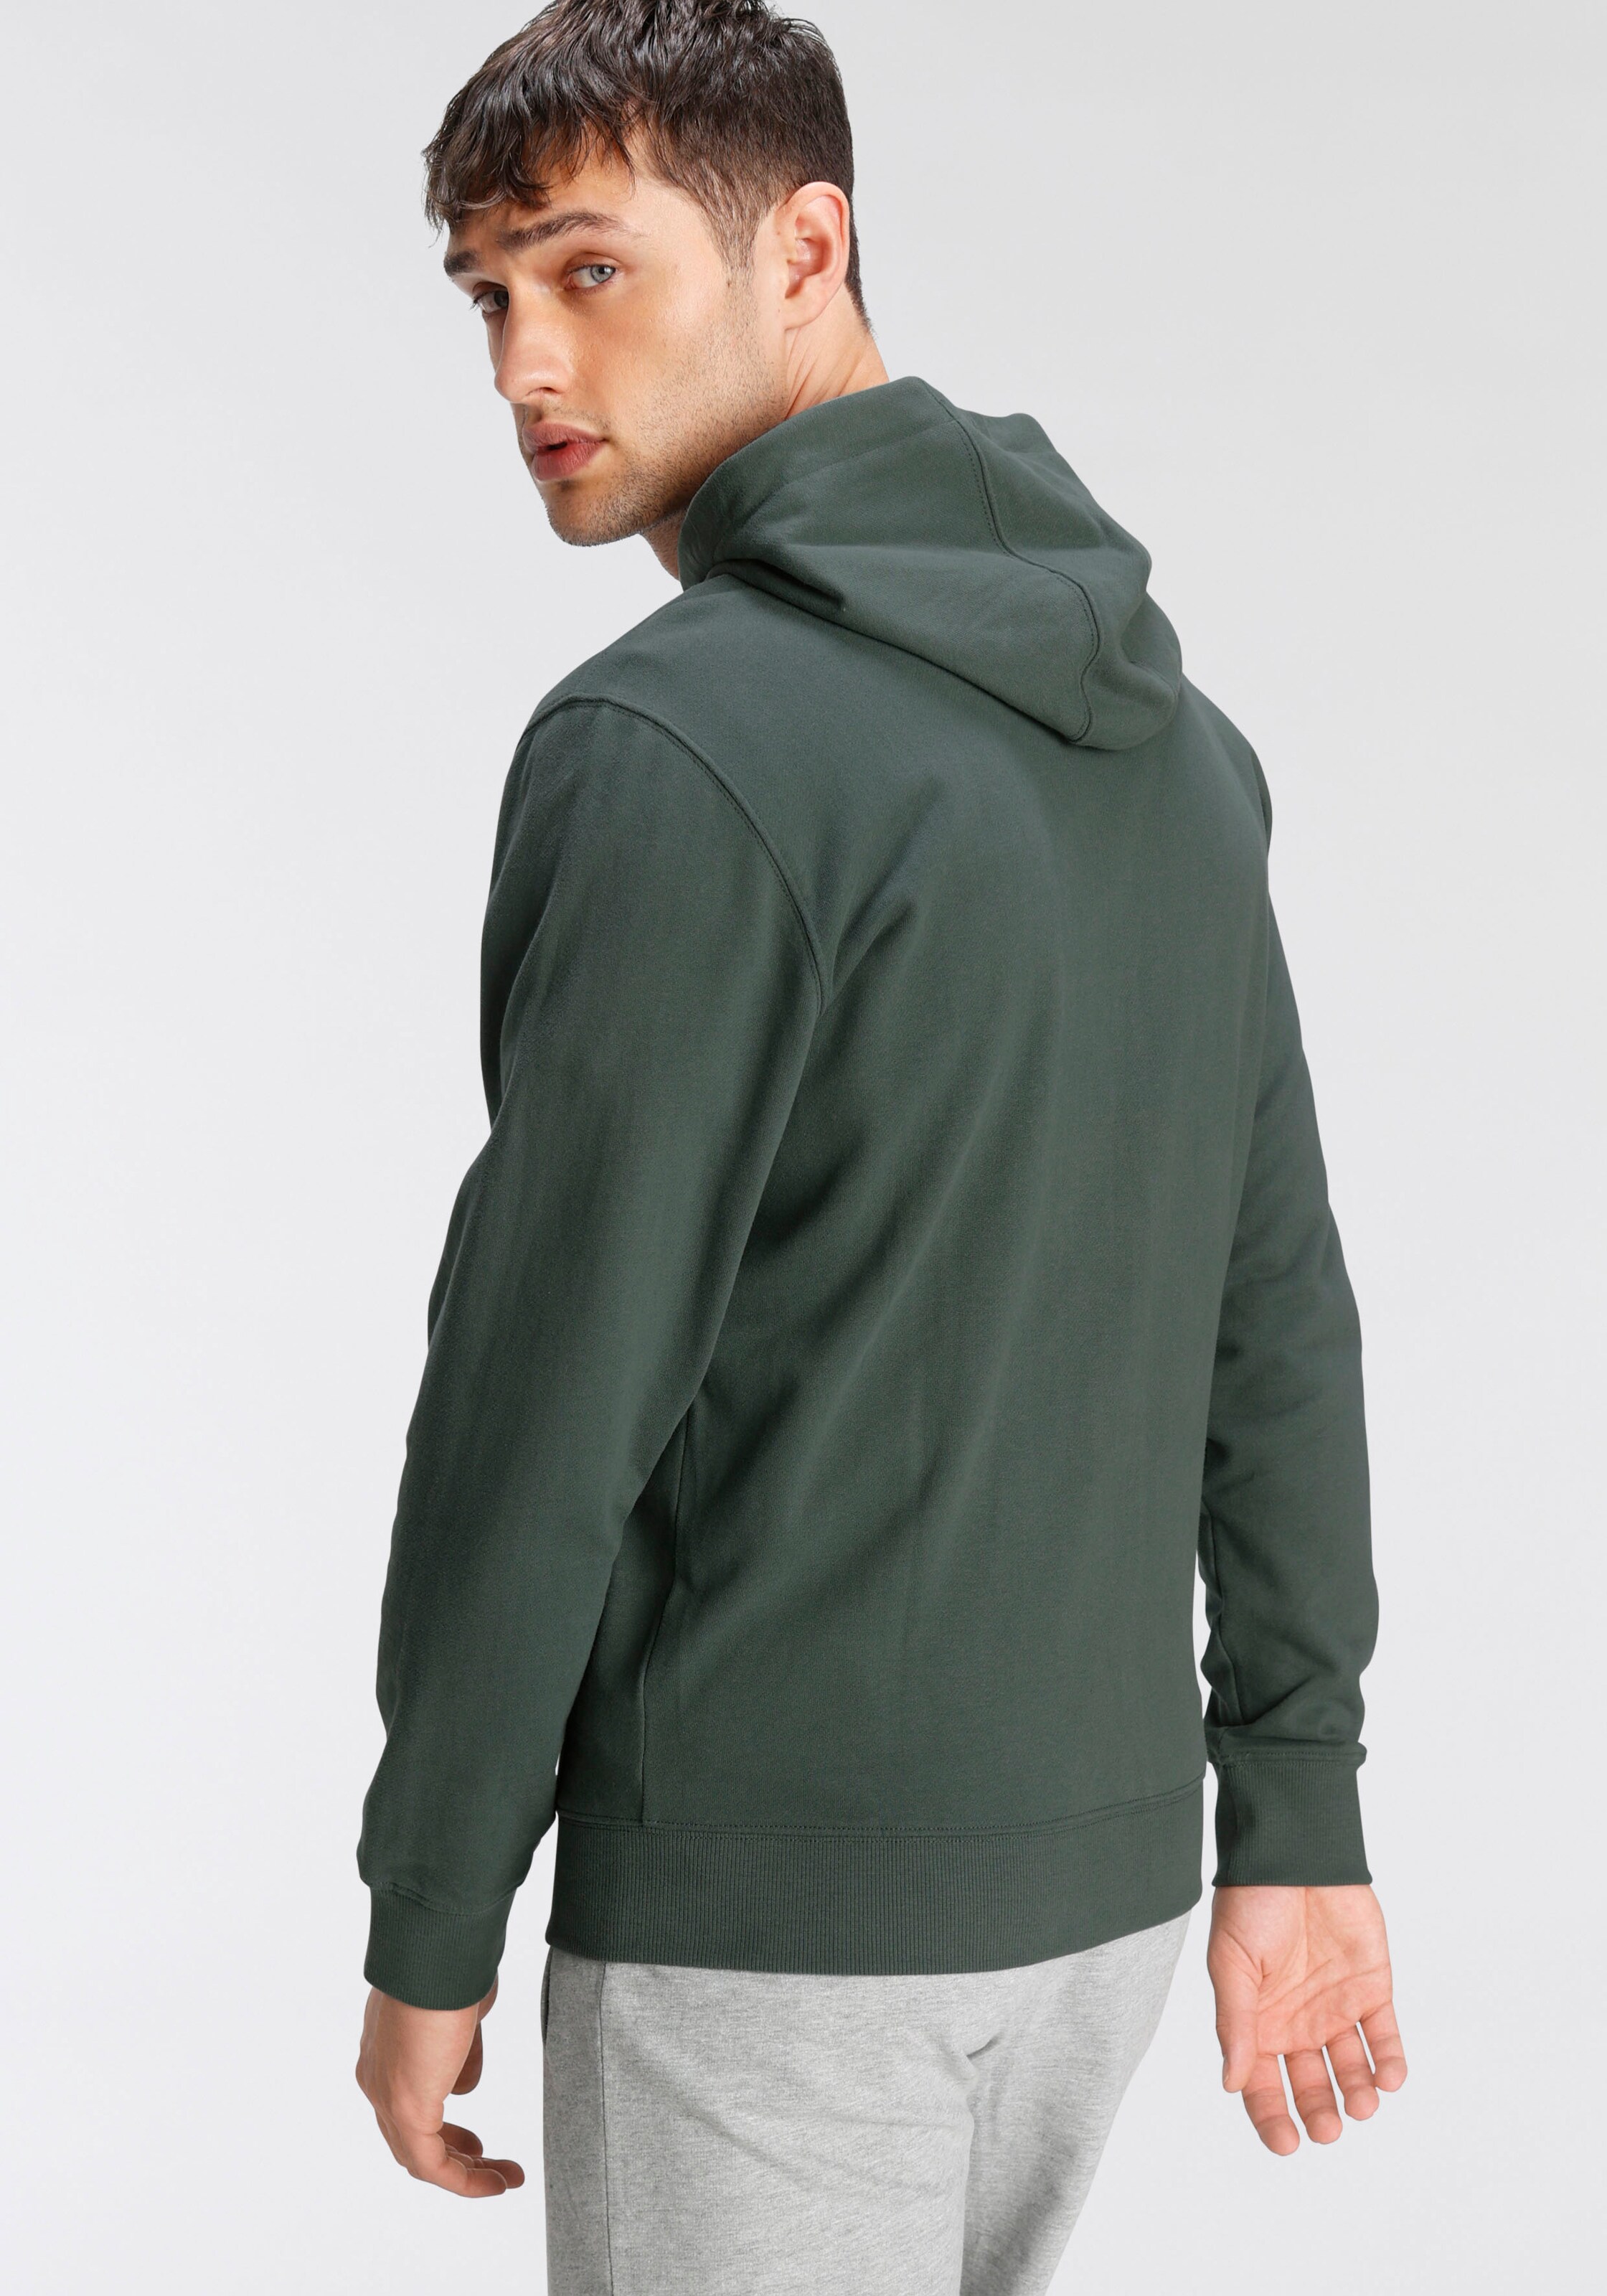 Männer Große Größen OTTO products Sweatshirt in Grün - YX97599